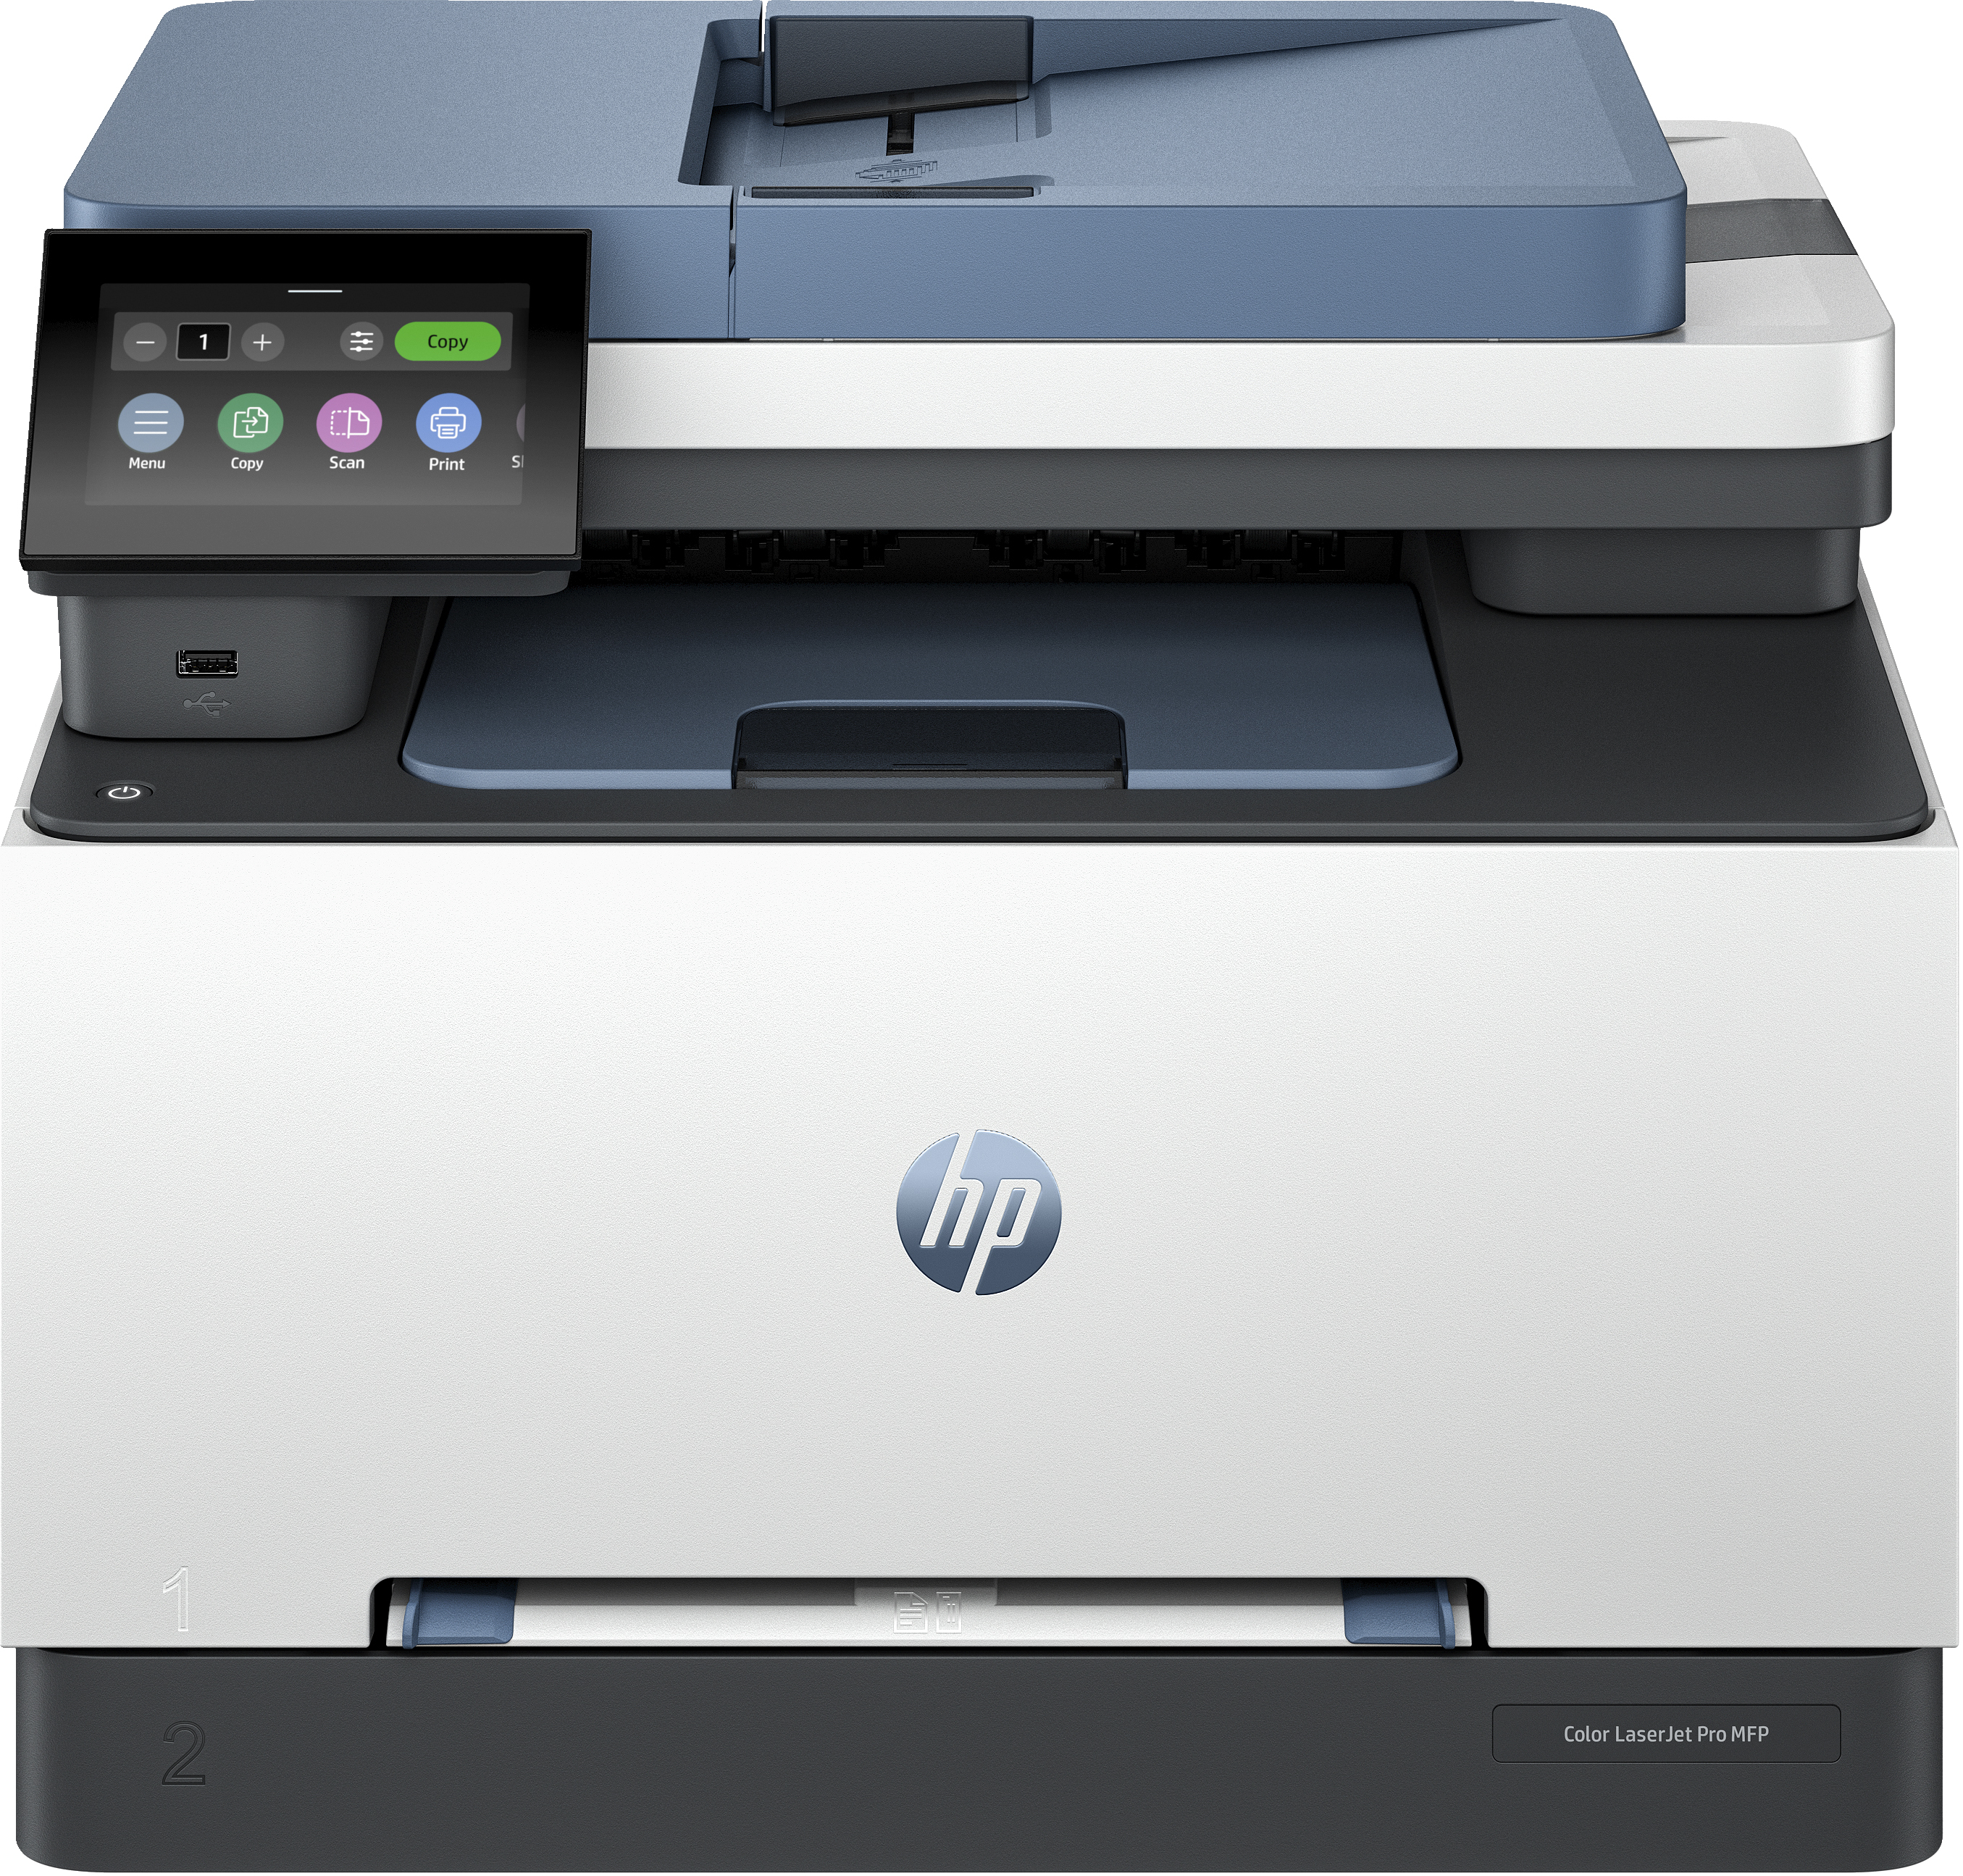 HP HP Color LaserJet Pro MFP 3302fdw, Kleur, Printer voor Kleine en middelgrote ondernemingen, Printen, kopi&#235;ren, scannen, faxen, Draadloos; printen vanaf telefoon of tablet; automatische documentinvoer; dubbelzijdig printen; dubbelzijdig scannen; scannen naar e-mail; scannen naar PDF; faxen; USB-poort voorzijde; touchscreen; TerraJet-cartridge